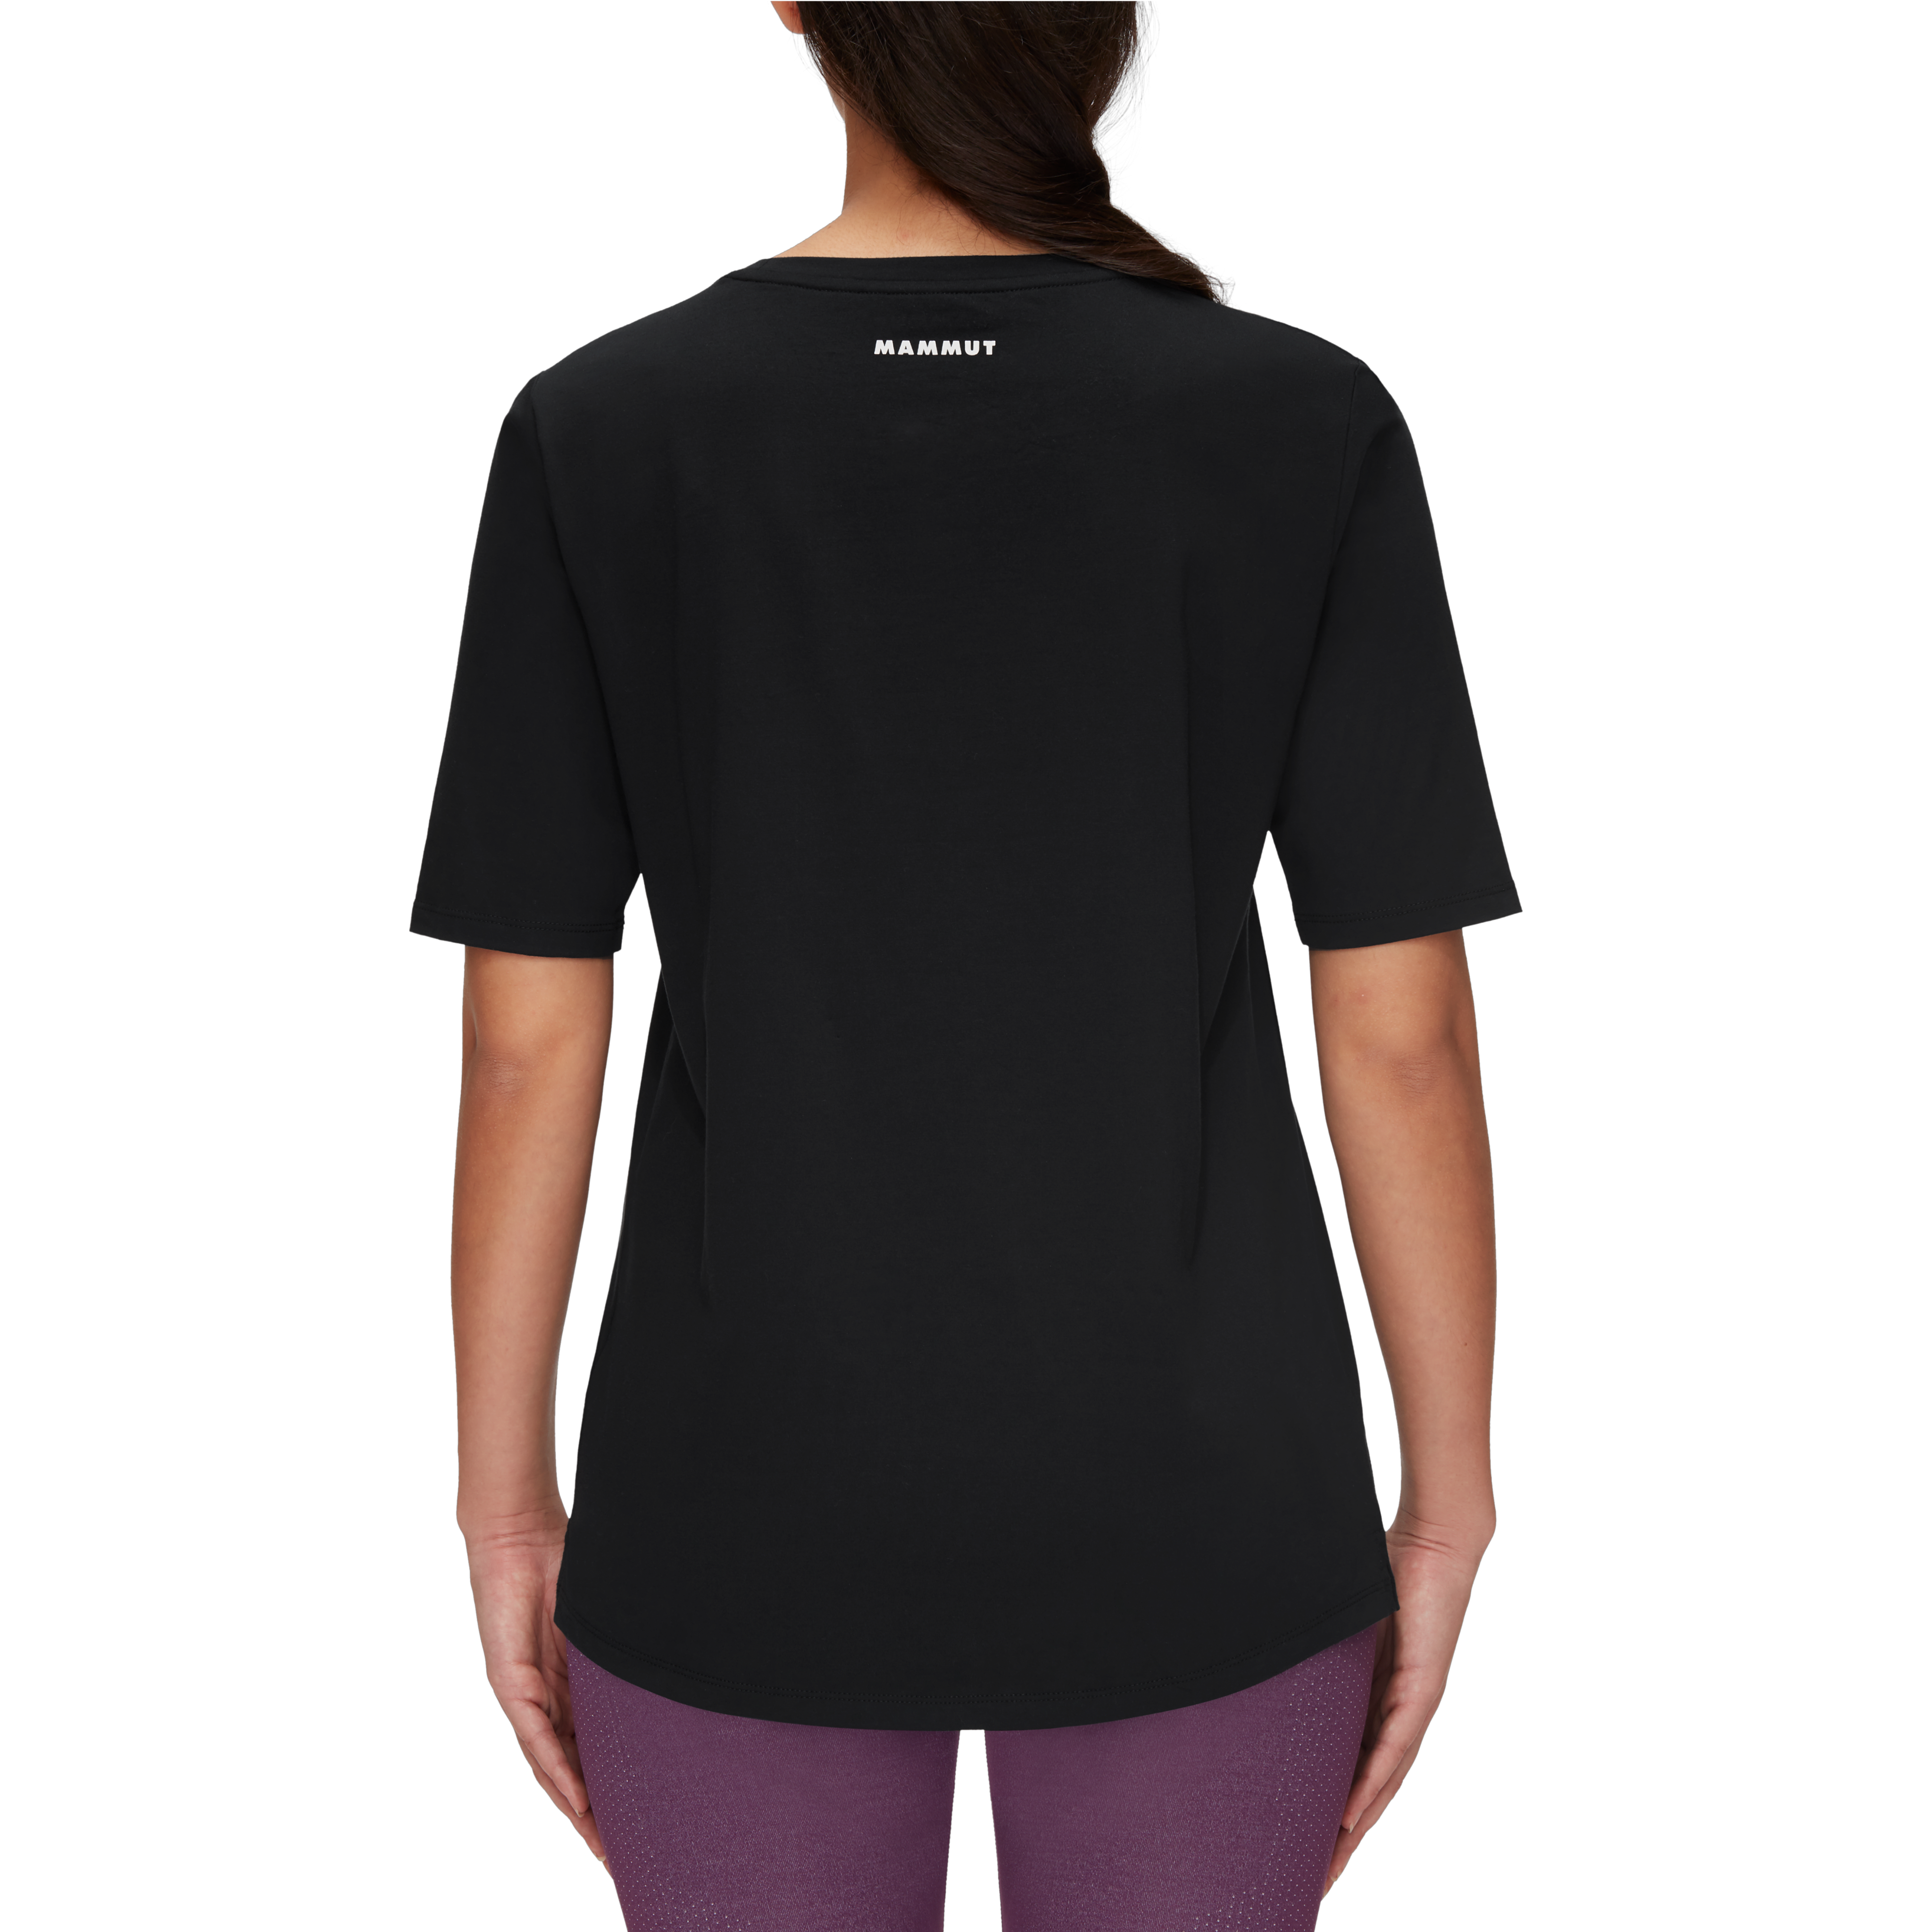 Mammut Logo T-Shirt Women product image